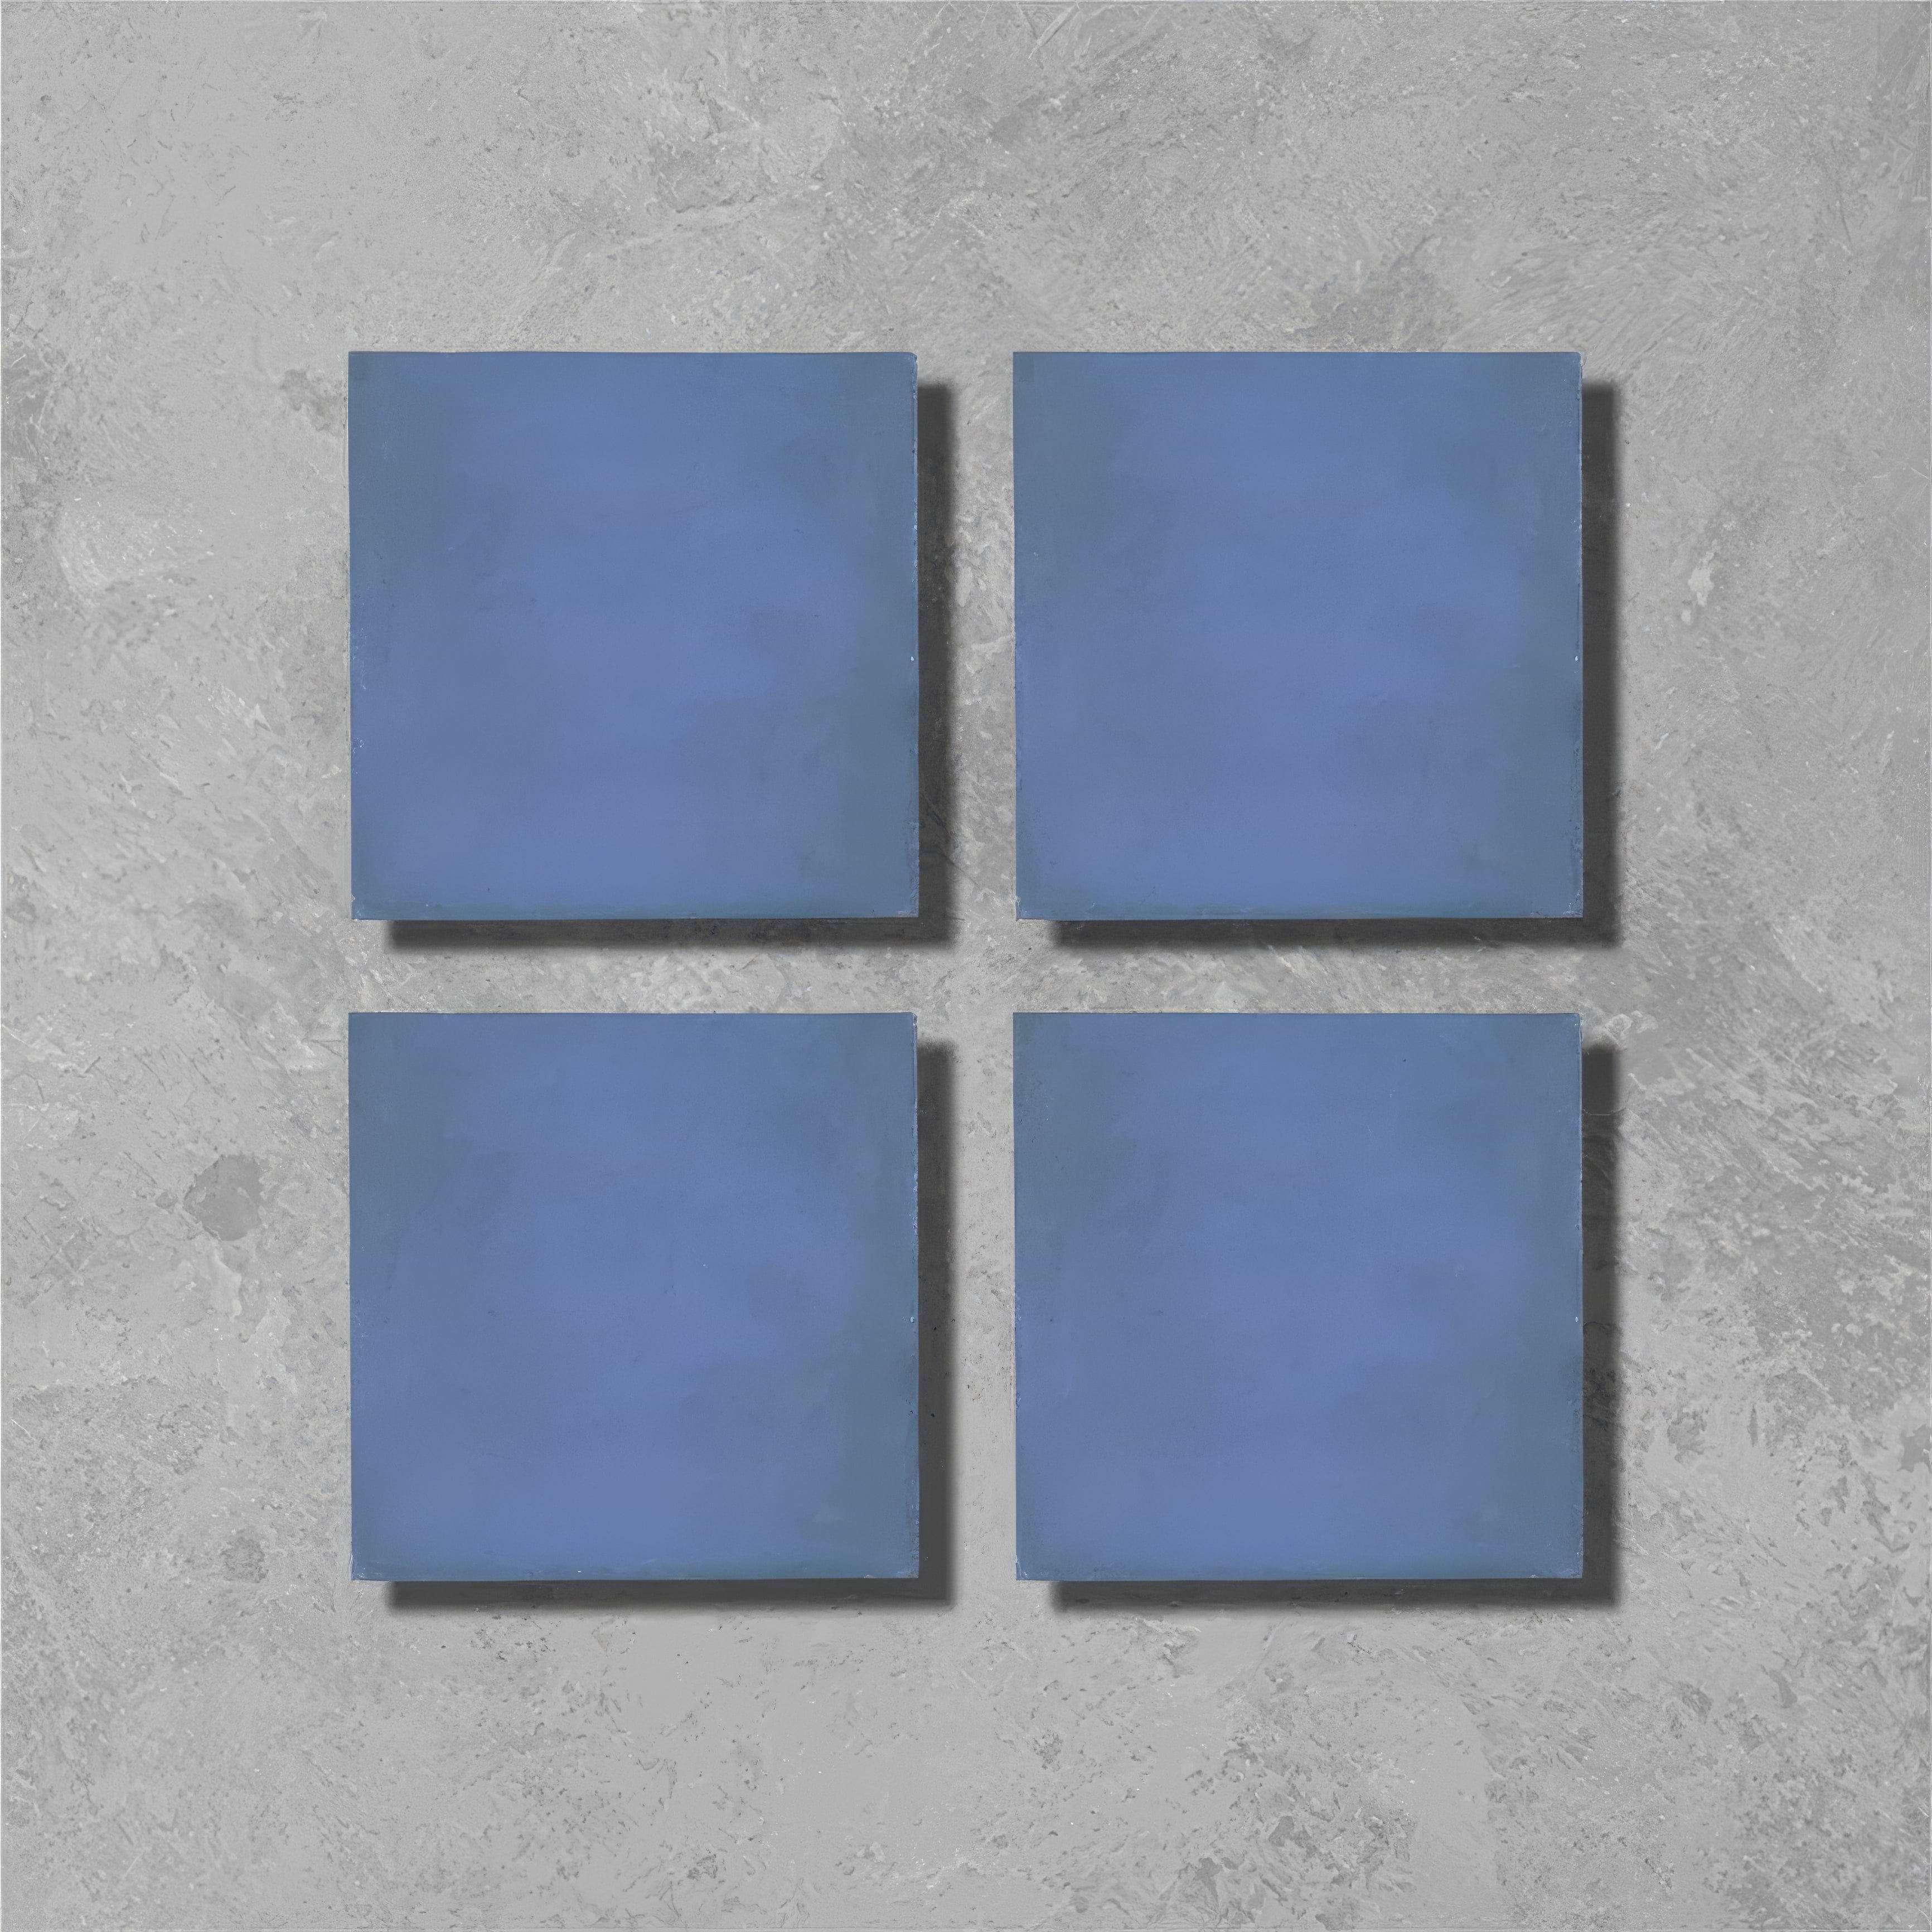 Navy Square Tile - Hyperion Tiles